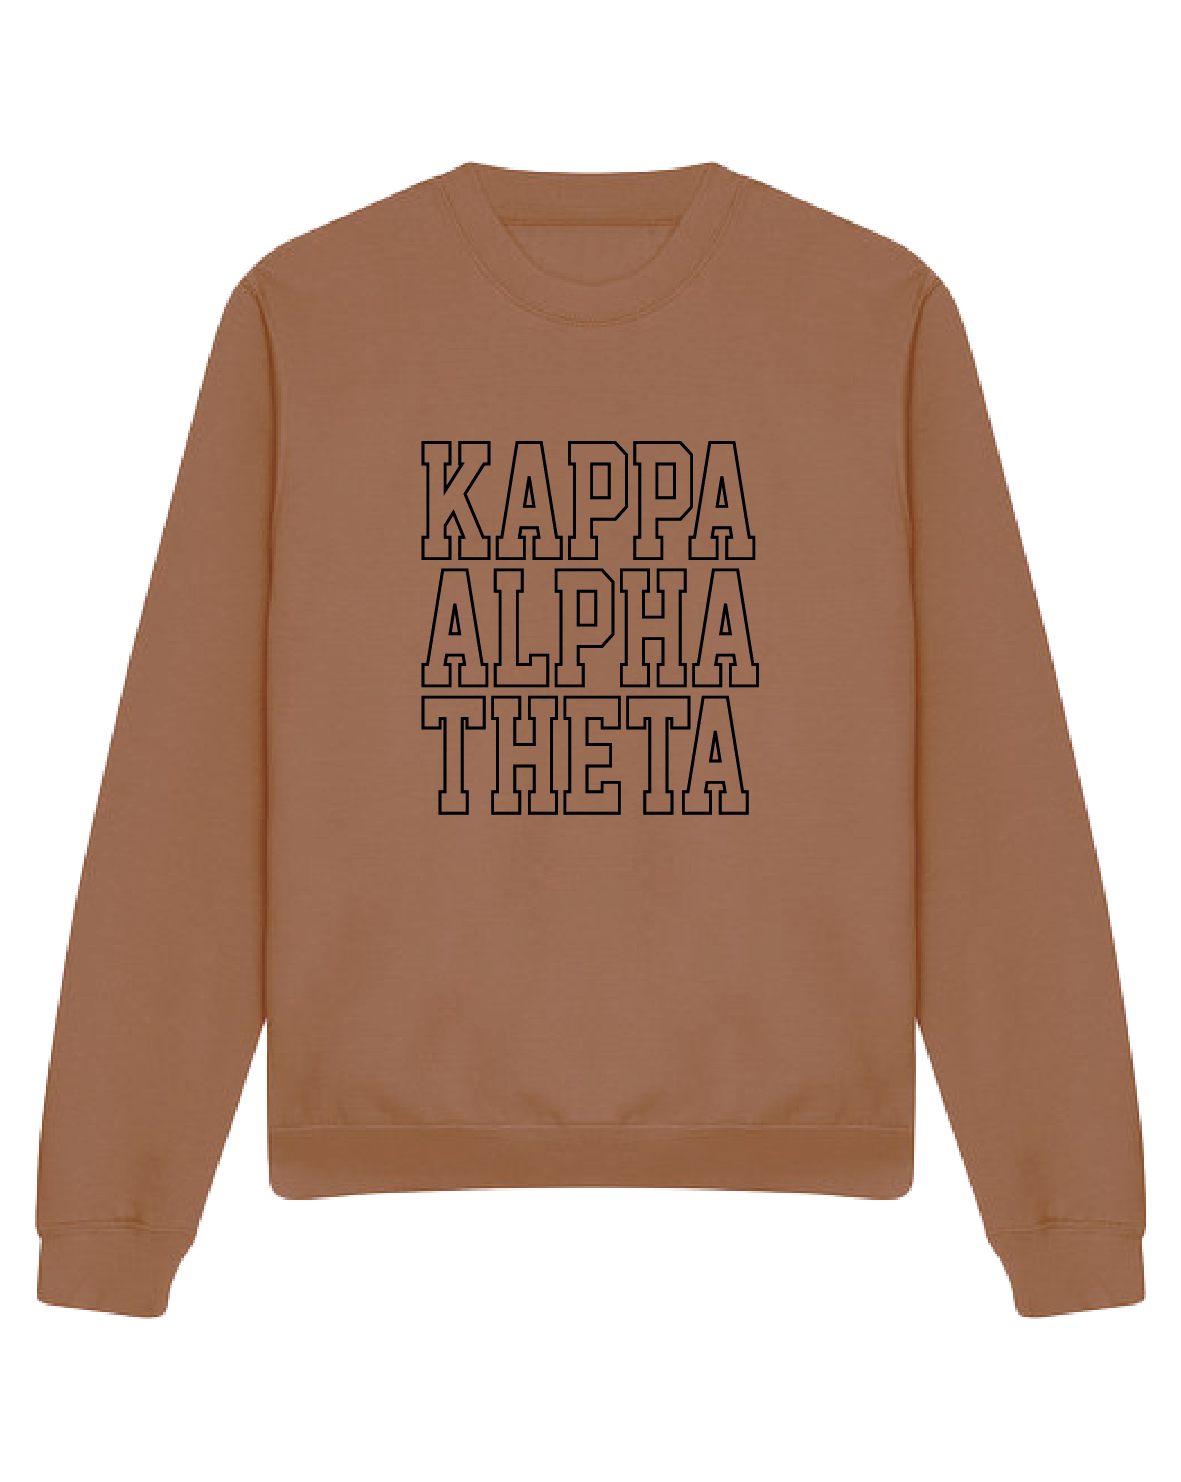 WS - Kappa Alpha Theta Block Crewneck (min qty 6) $32 / $70